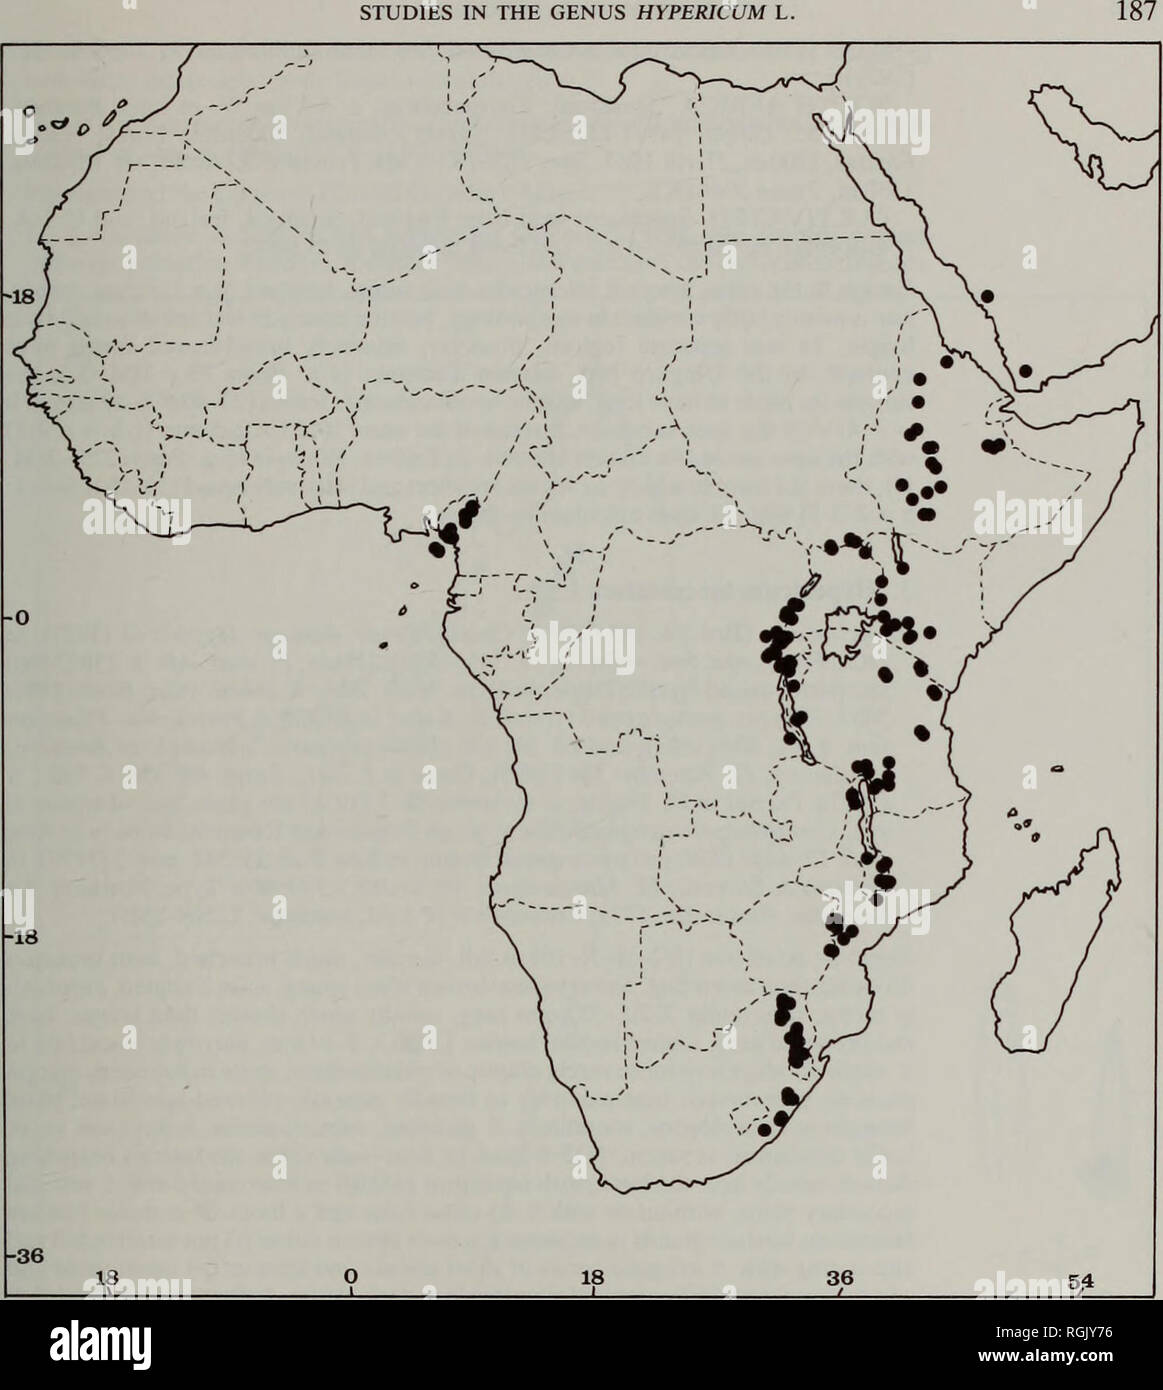 . Bulletin des British Museum (Natural History) Botanik. Studien, DIE IN DER GATTUNG HYPERICUM L. Karte 2 Abs. 1. Campylosporus: 2 b. H. Das revolutum subsp Das revolutum. m, 22.XI.1958, Robson &Amp; Angus 246 (BM, K). Central: Dedza, chongoni Mtn, C. 2100 m, 29. v. 1960, Chapman 722 (BM), 722a (K). Süden: Zomba Plateau, von Chingwe's Loch, 1880 m, 11. ii. 1970, Brummitt & Amp; Banda 8514 (K). Sambia. Osteuropa: nyika Plateau, 1-6 km N. der Rest House, 2100 m, 27.XI.1955, Lees 95 (K). [Central: Broken Hill, xi.1928, van Hogsen 1231 (PRE), vermutlich falschen Ort]. Simbabwe. Osteuropa: Umtali, Rim von Umkarara Valle Stockfoto